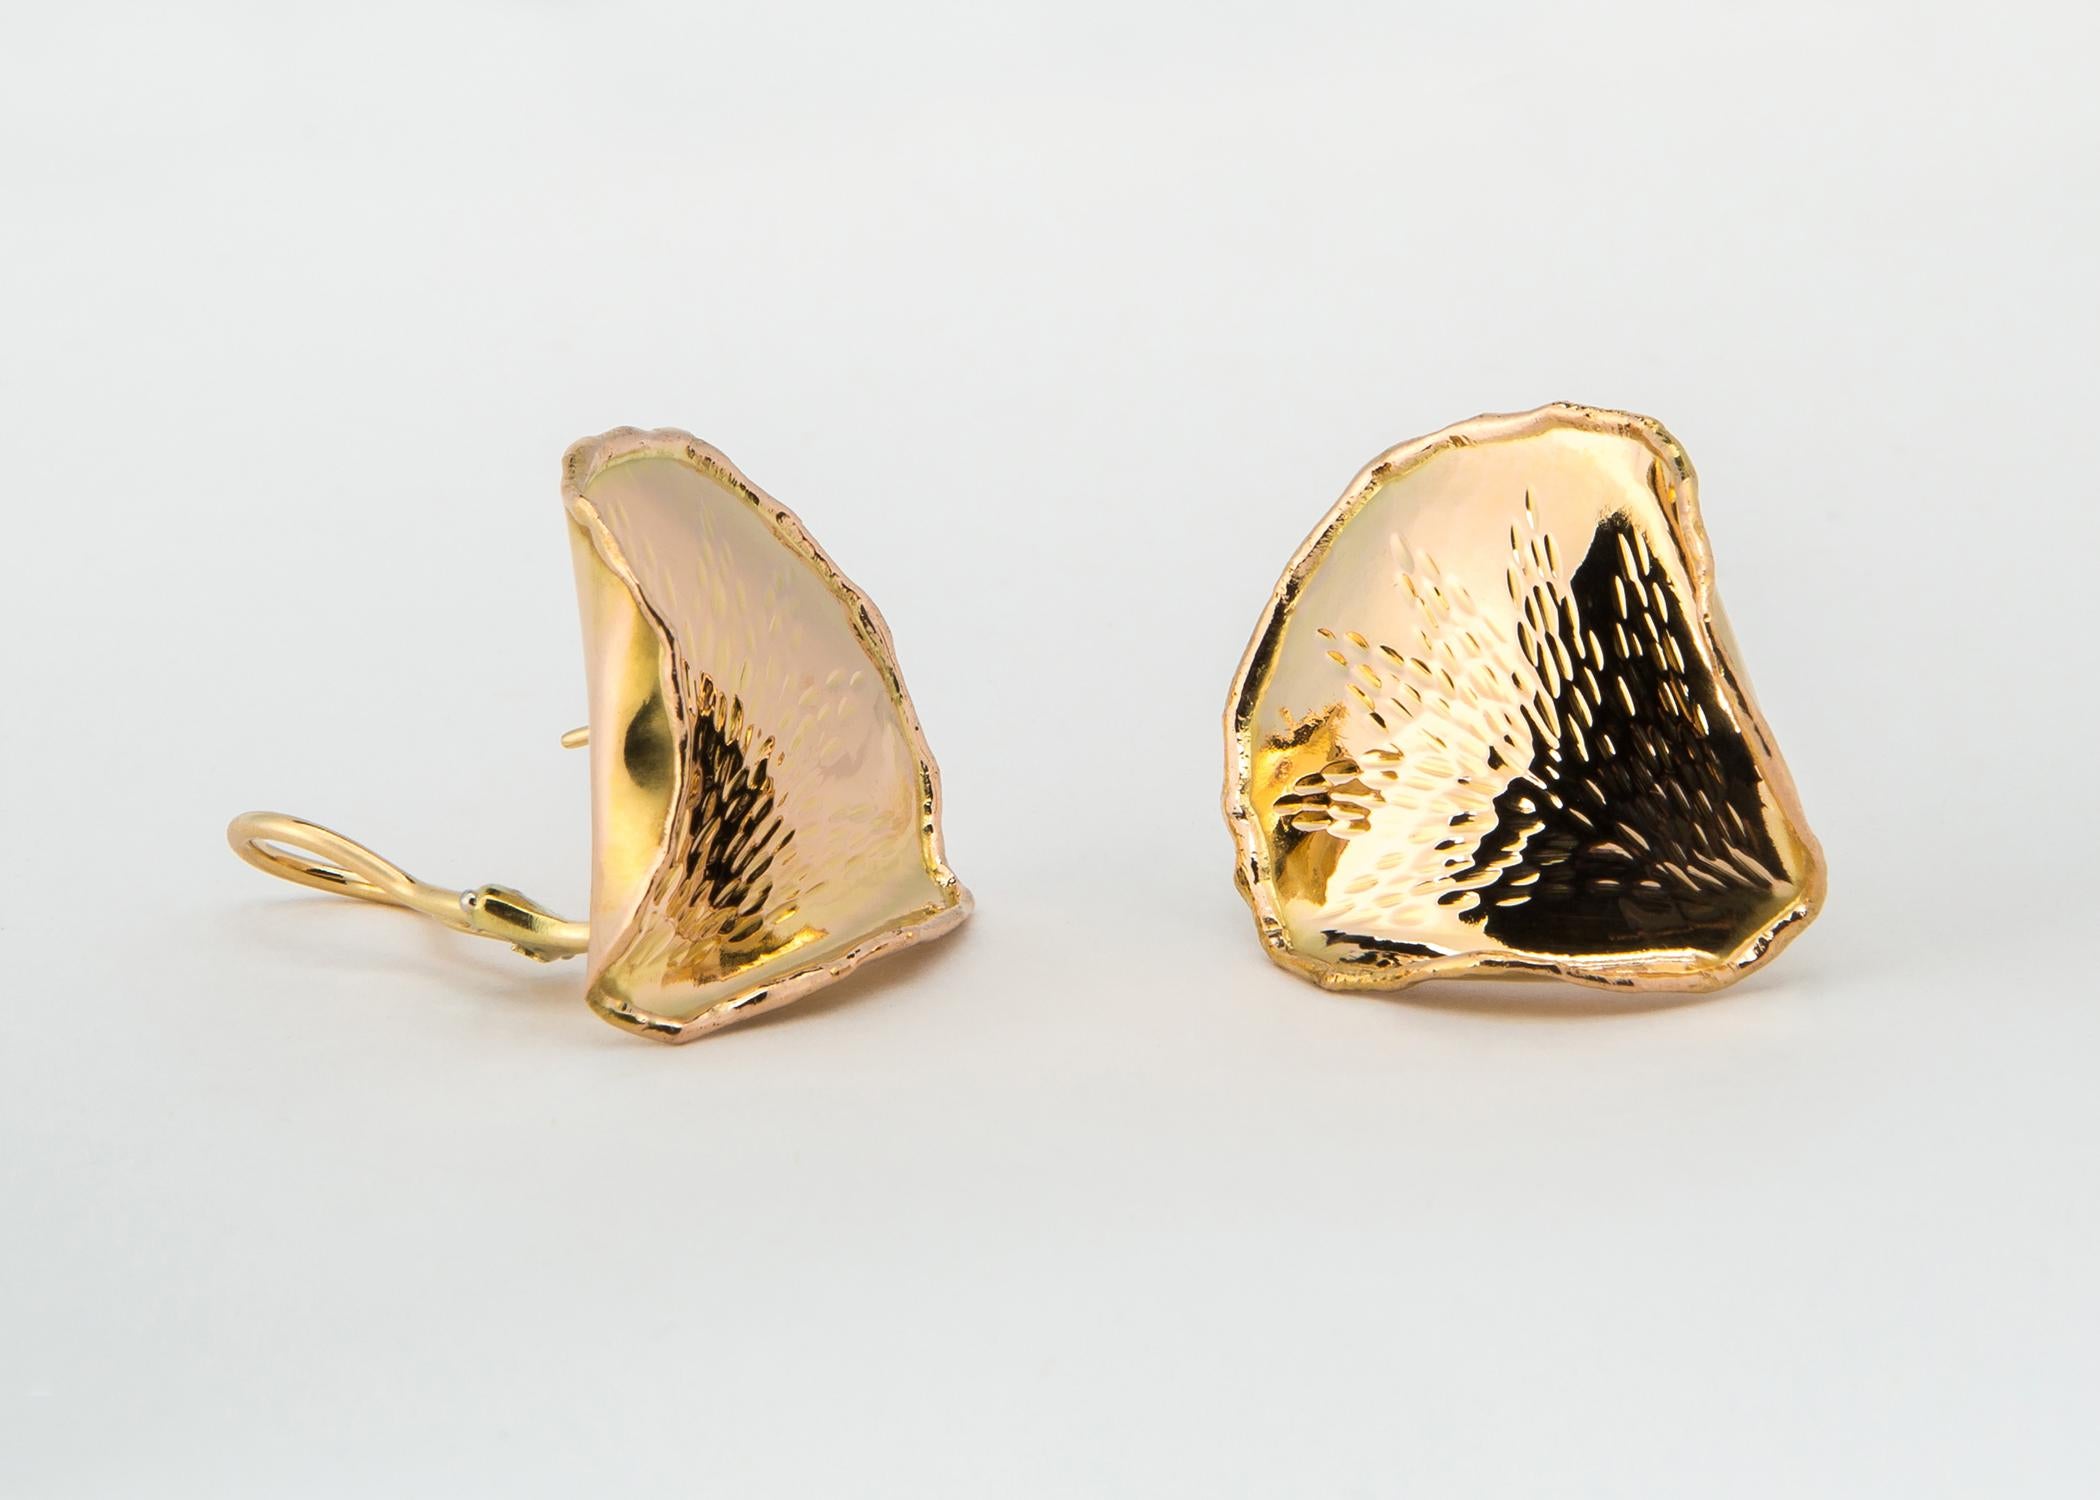 Ein klassisches Design von Angela Cummings für Tiffany & Co. Jedes Blütenblatt wird in Handarbeit aus reichem 18-karätigem Gold gefertigt, graviert und perfektioniert. Fast 1 1/4 Zoll groß.